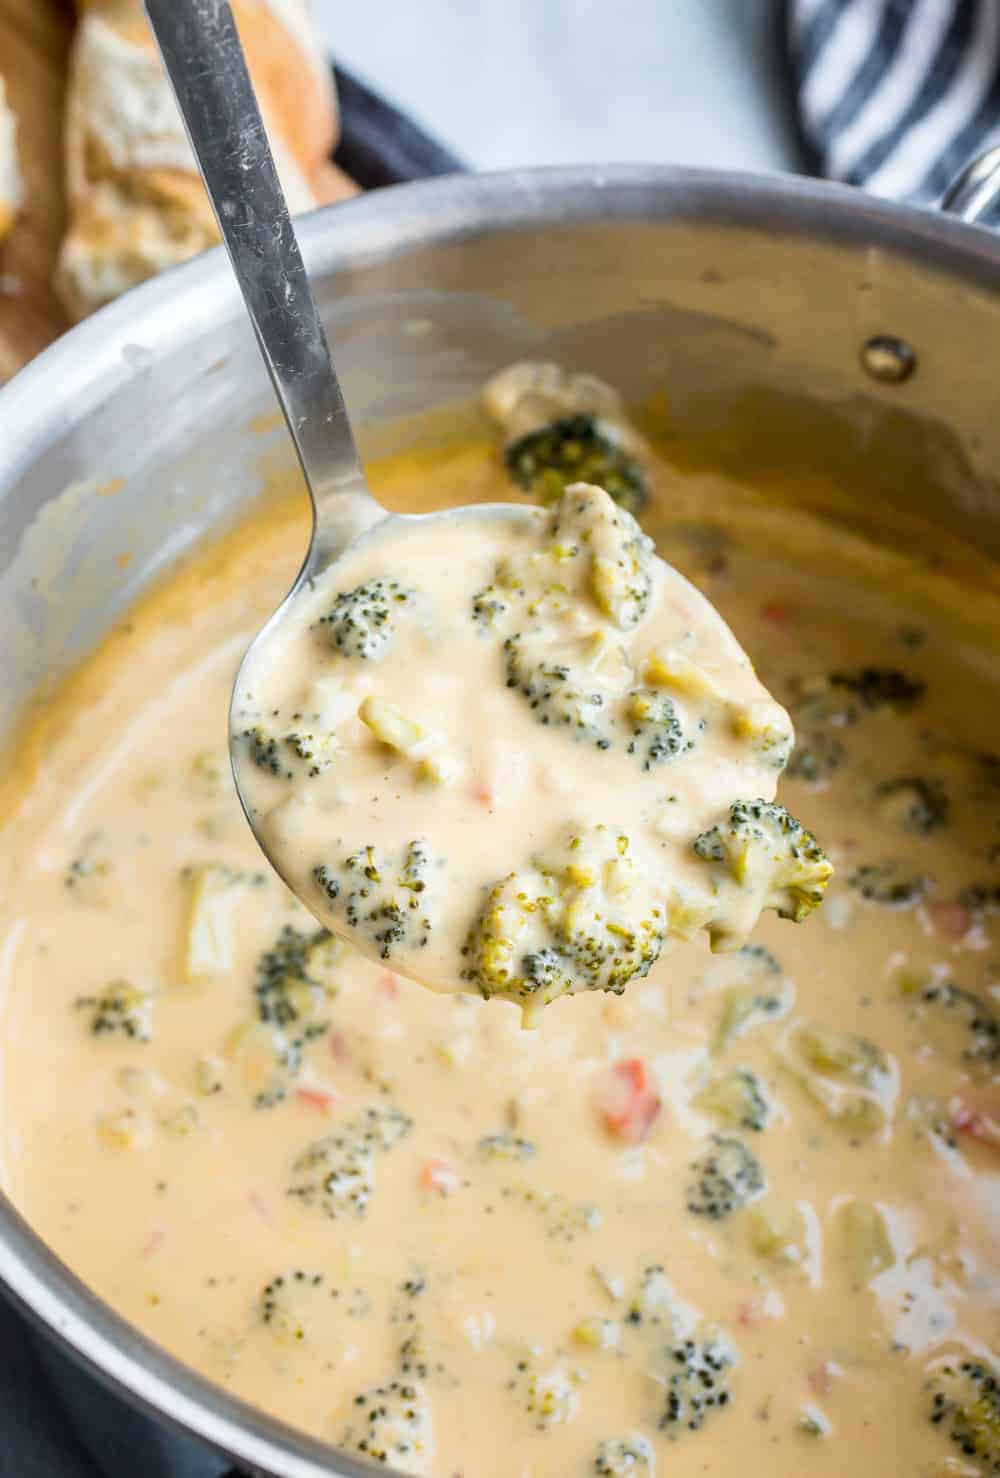 Pfanne mit Brokkoli-Käse-Suppe über einen Topf mit Suppe